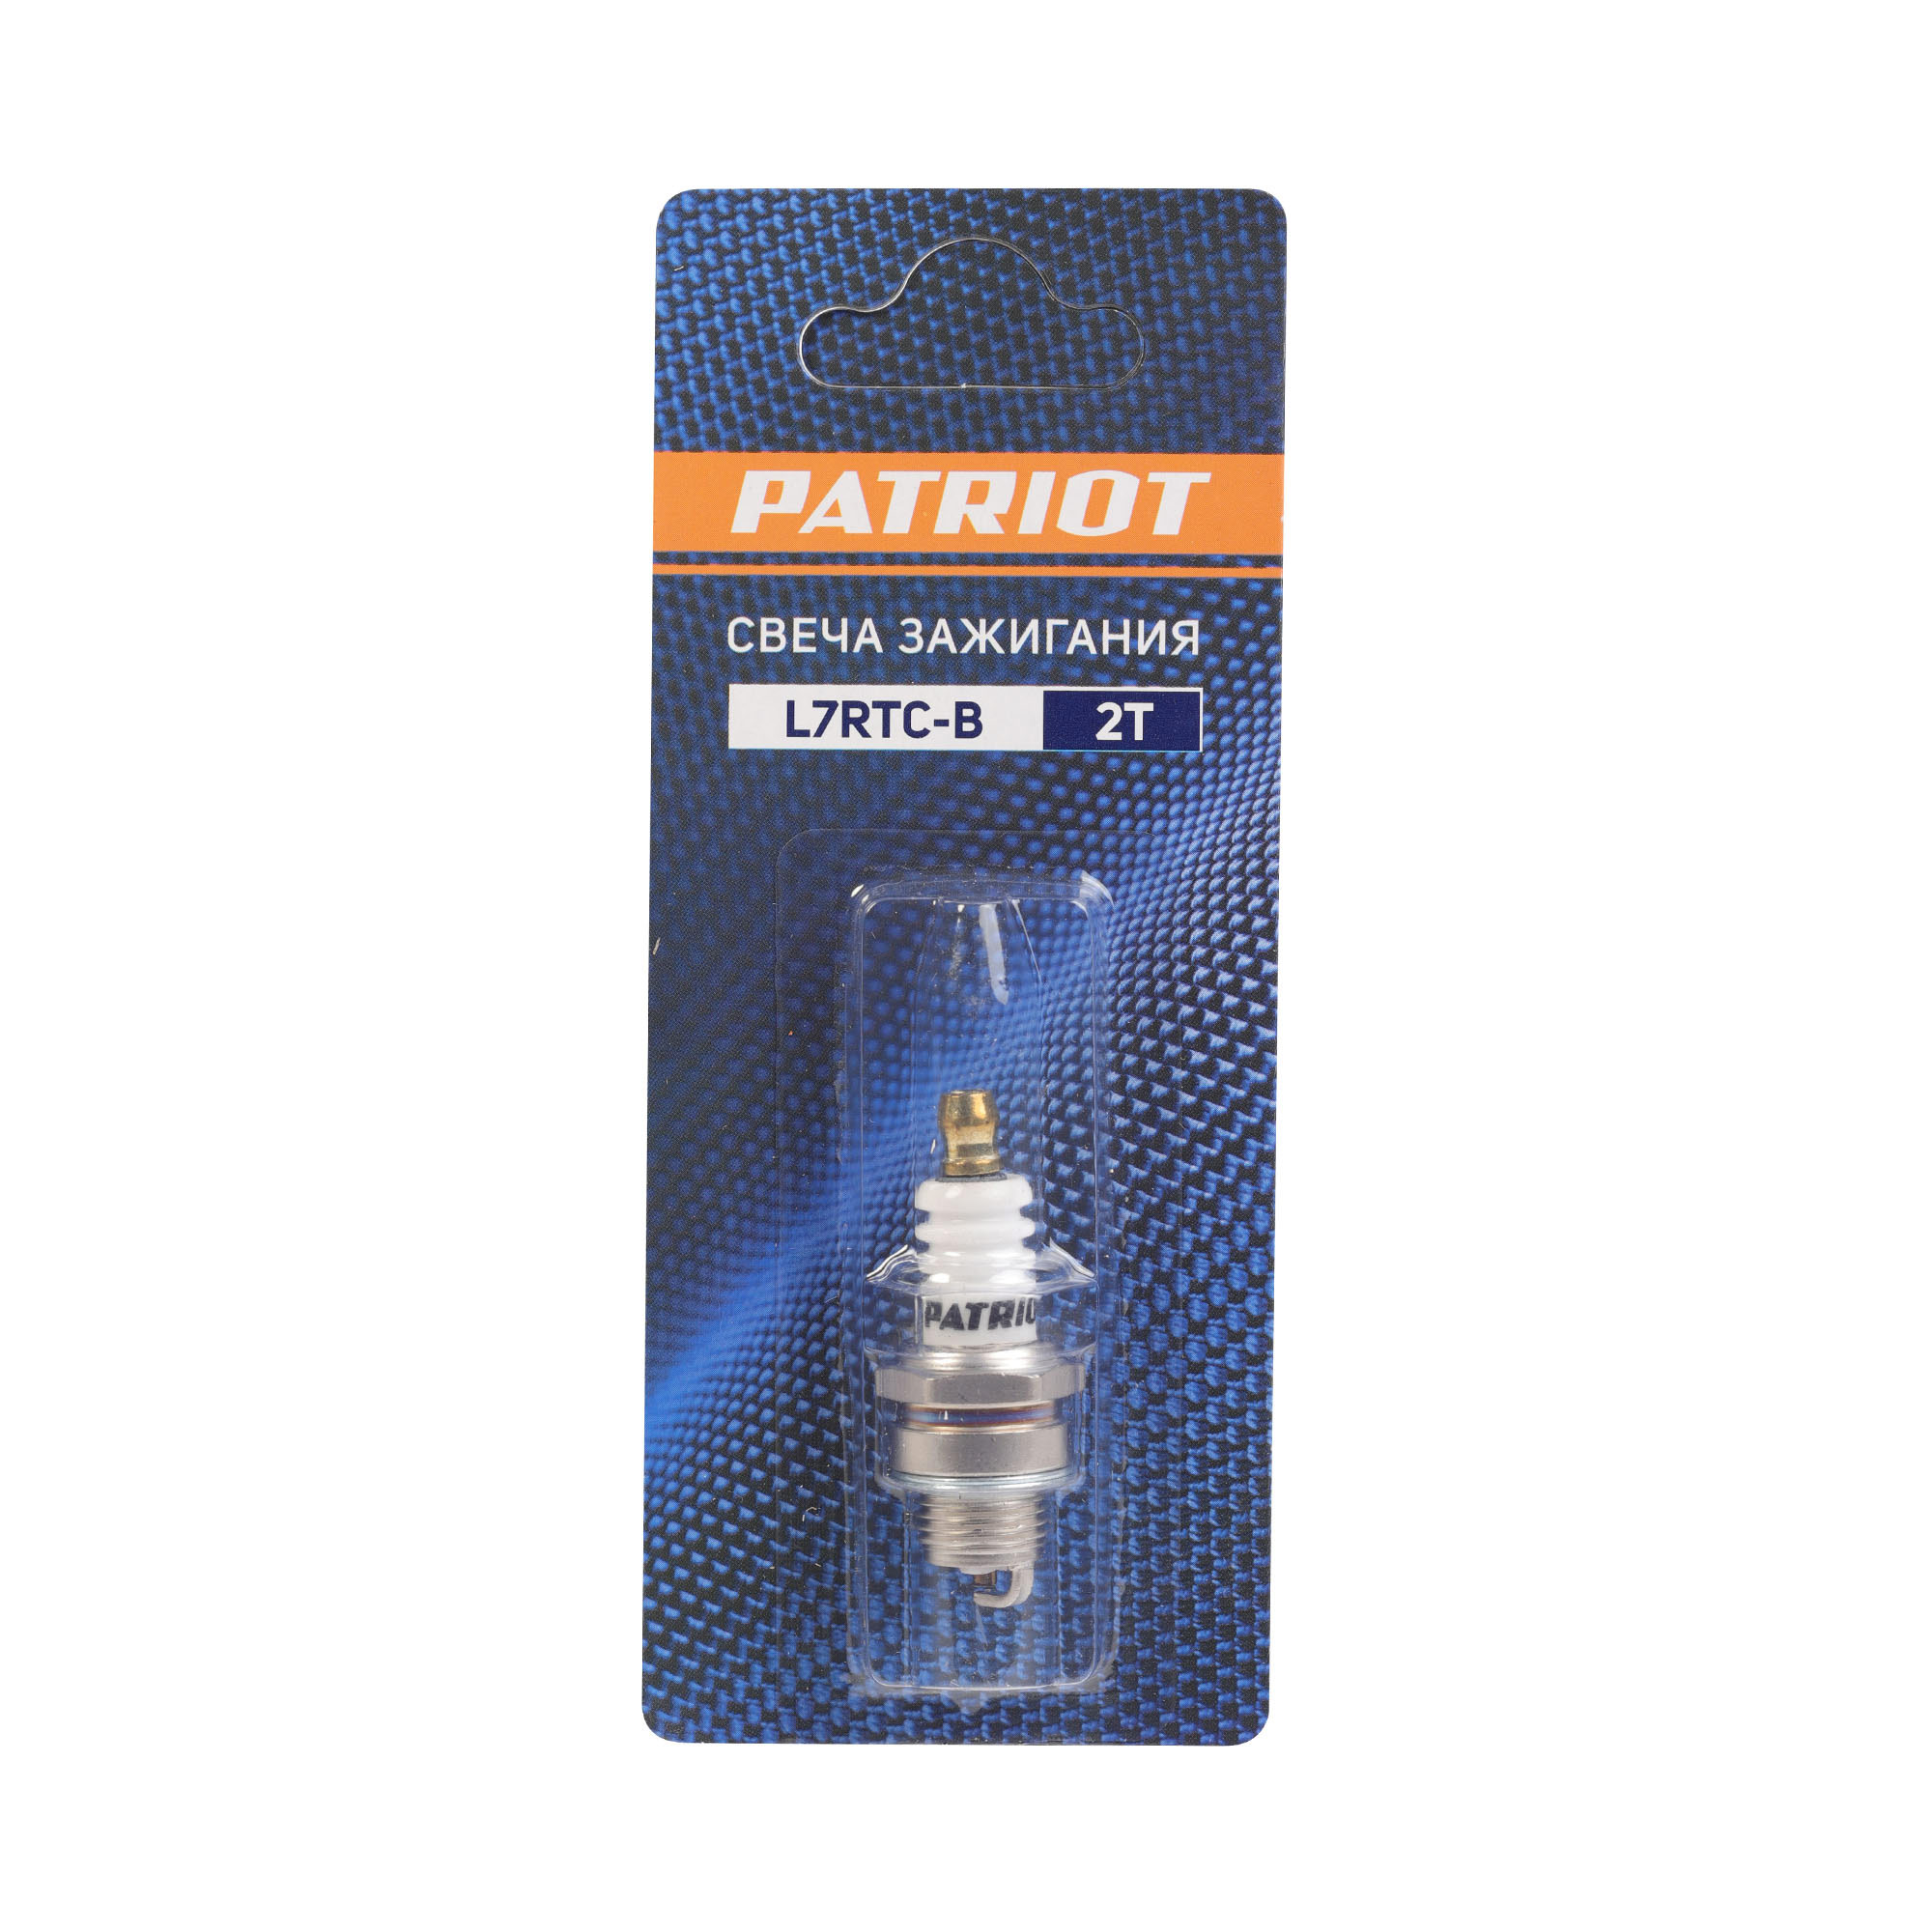 Свеча зажигания PATRIOT L7RTC-B 2Т, 19 мм, резьба 9.5 мм, M14х1.25 мм